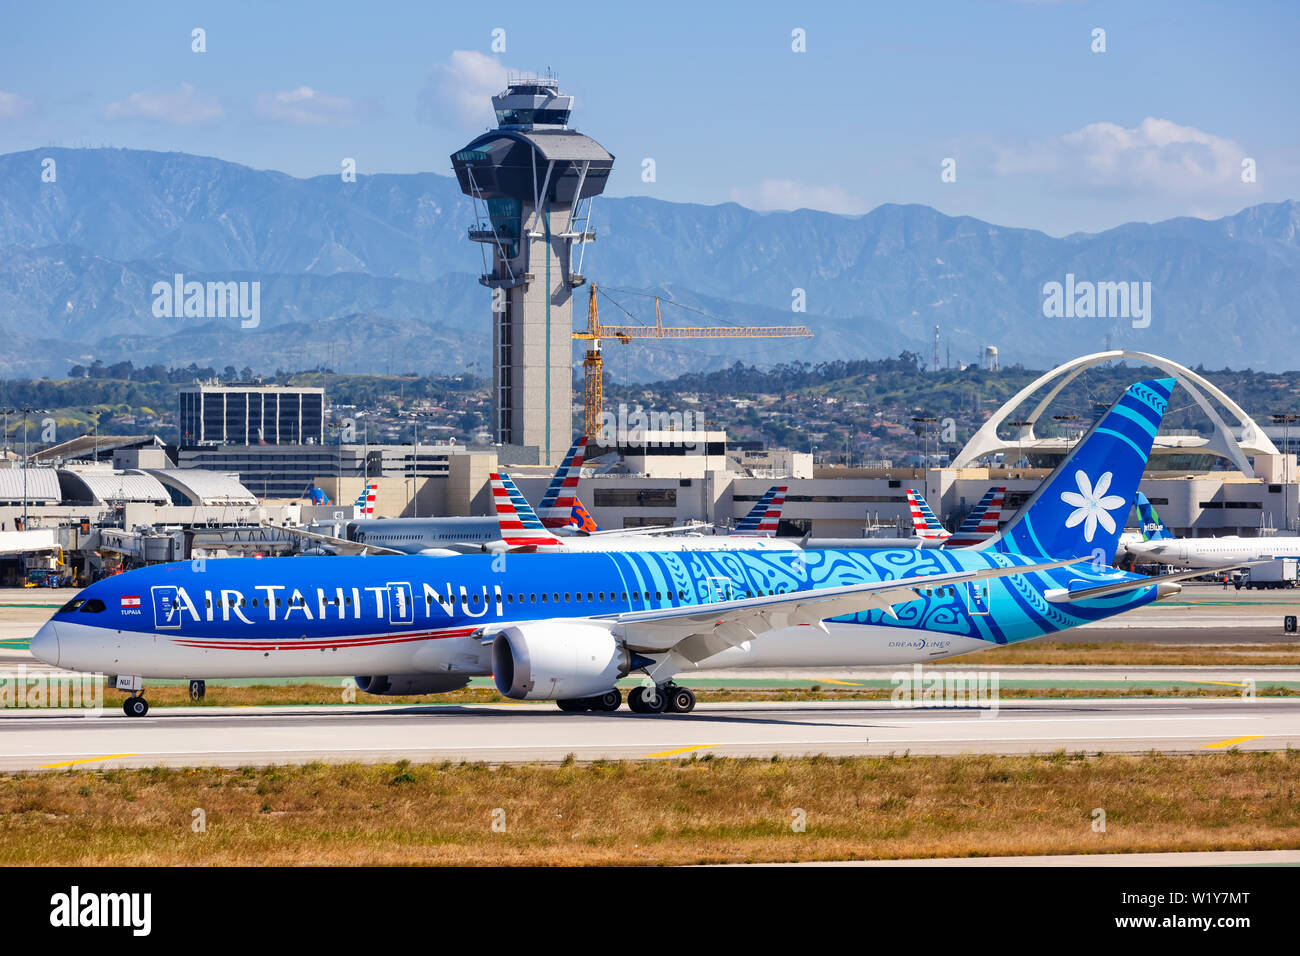 Los Angeles, Kalifornien - 12. April 2019: Air Tahiti Nui Boeing 787-9 Dreamliner Flugzeug am Flughafen Los Angeles (LAX) in den Vereinigten Staaten. Stockfoto